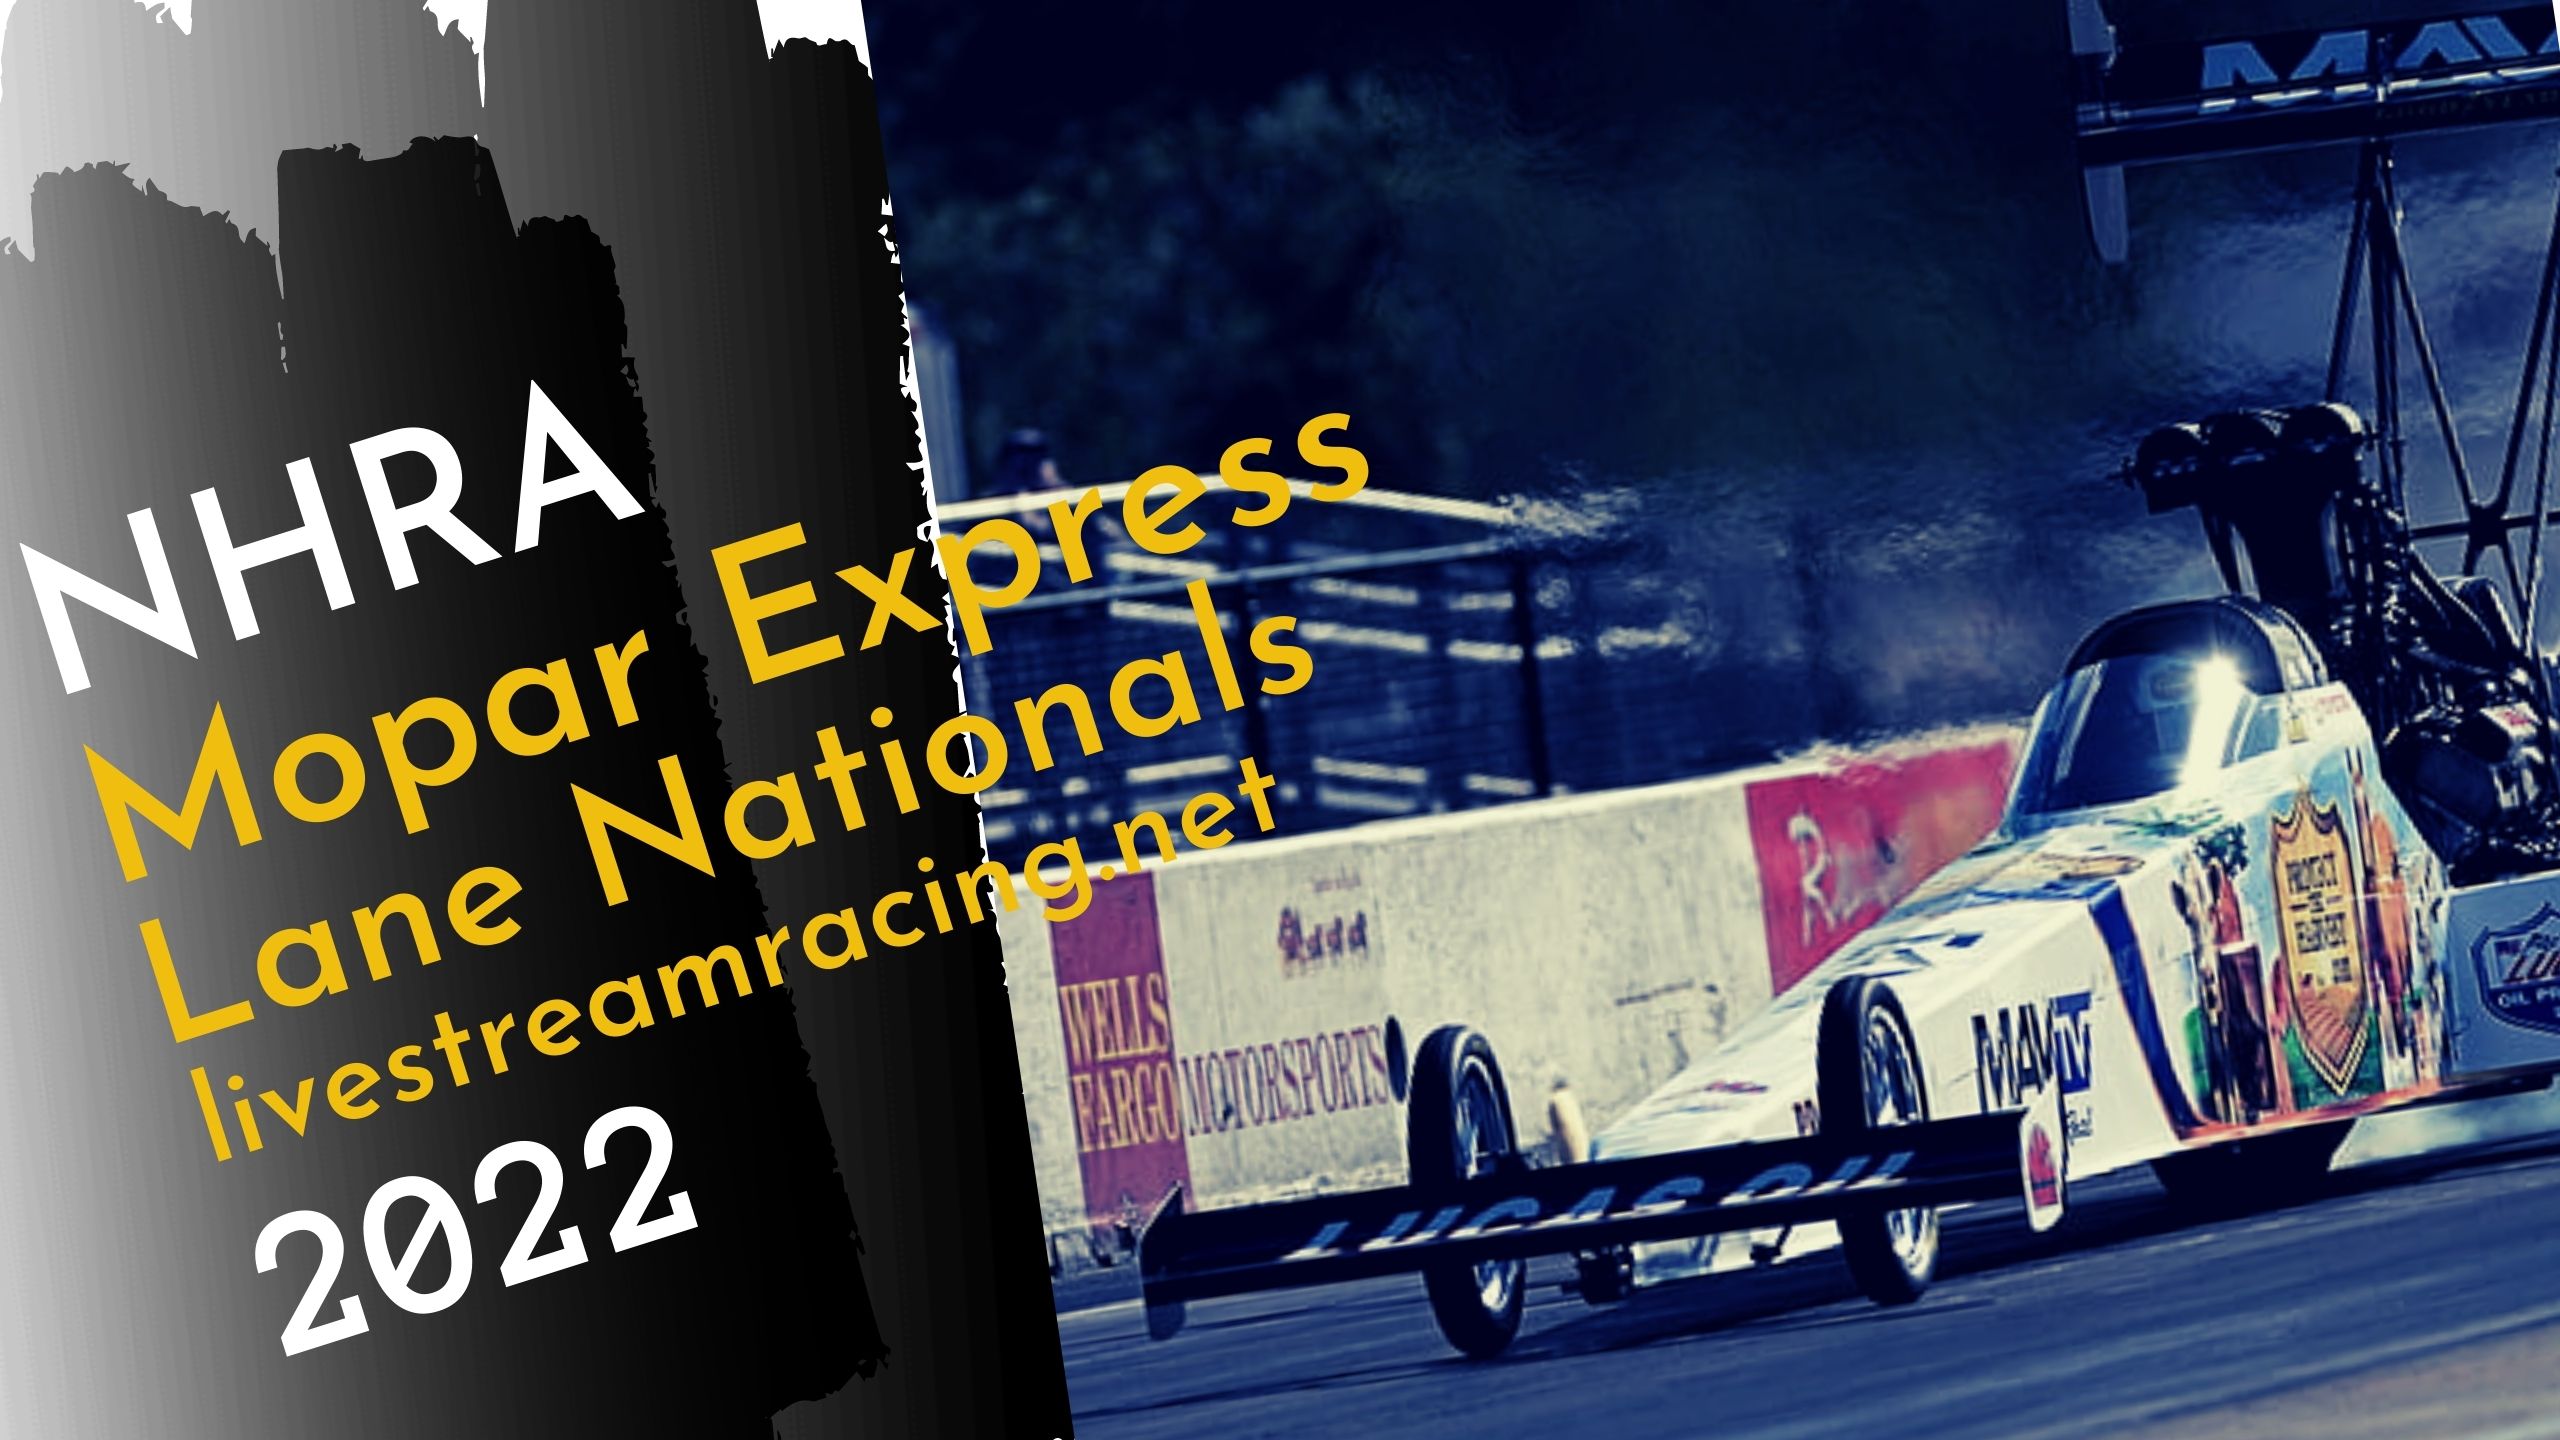 Mopar Express Lane NHRA Nationals 2022 Live Streaming